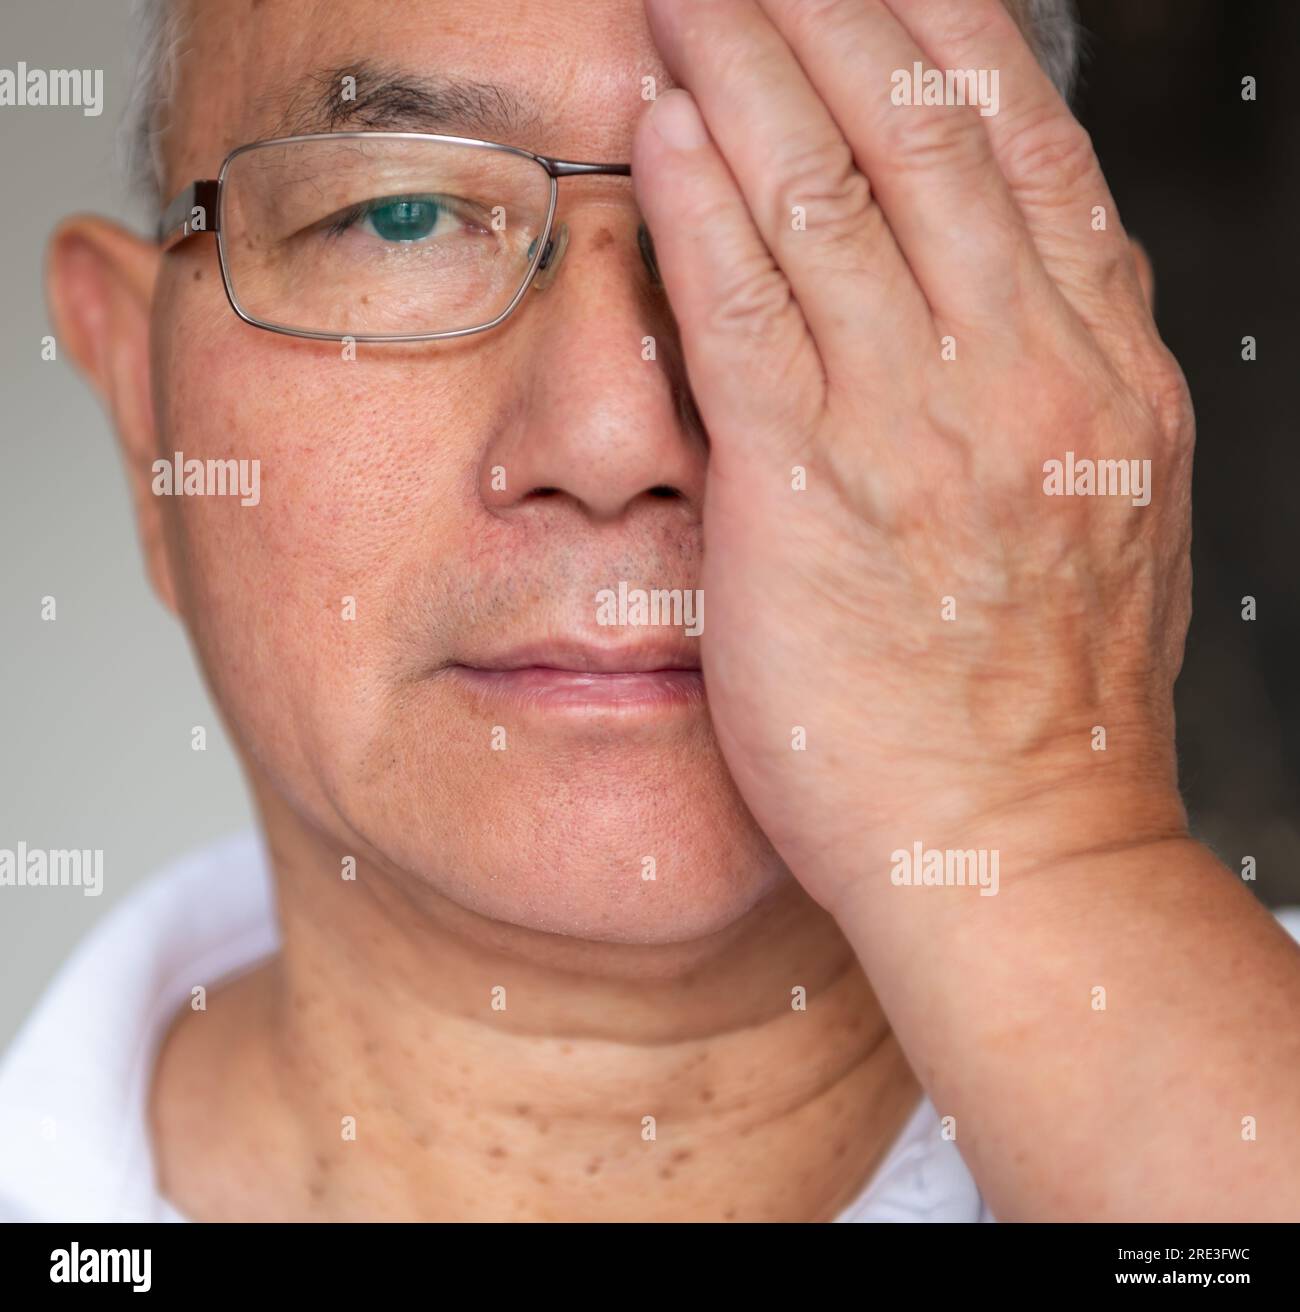 Un uomo che mette alla prova la vista sul suo occhio destro con un paio di occhiali varifocali. Foto Stock